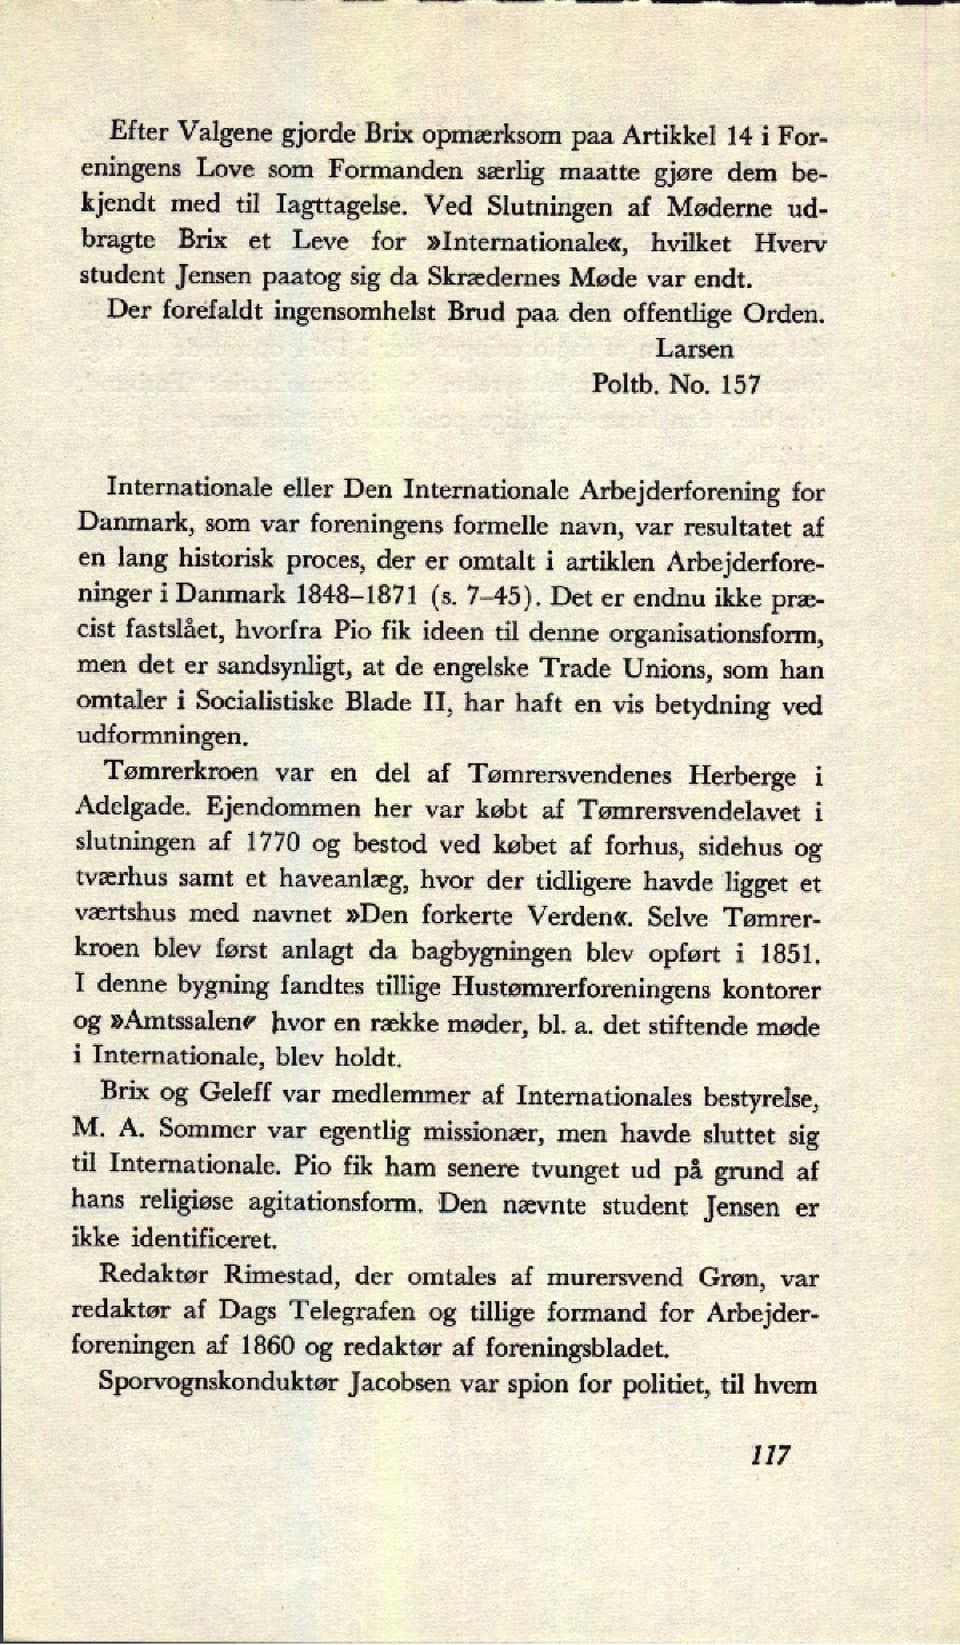 Internonale Danmark, eller s D Internonale ngs No. 157 Arbejng melle resultet navn, lang hstorsk proces, er talt artkl Arbeje1848-1871 nnger Danmark (5.